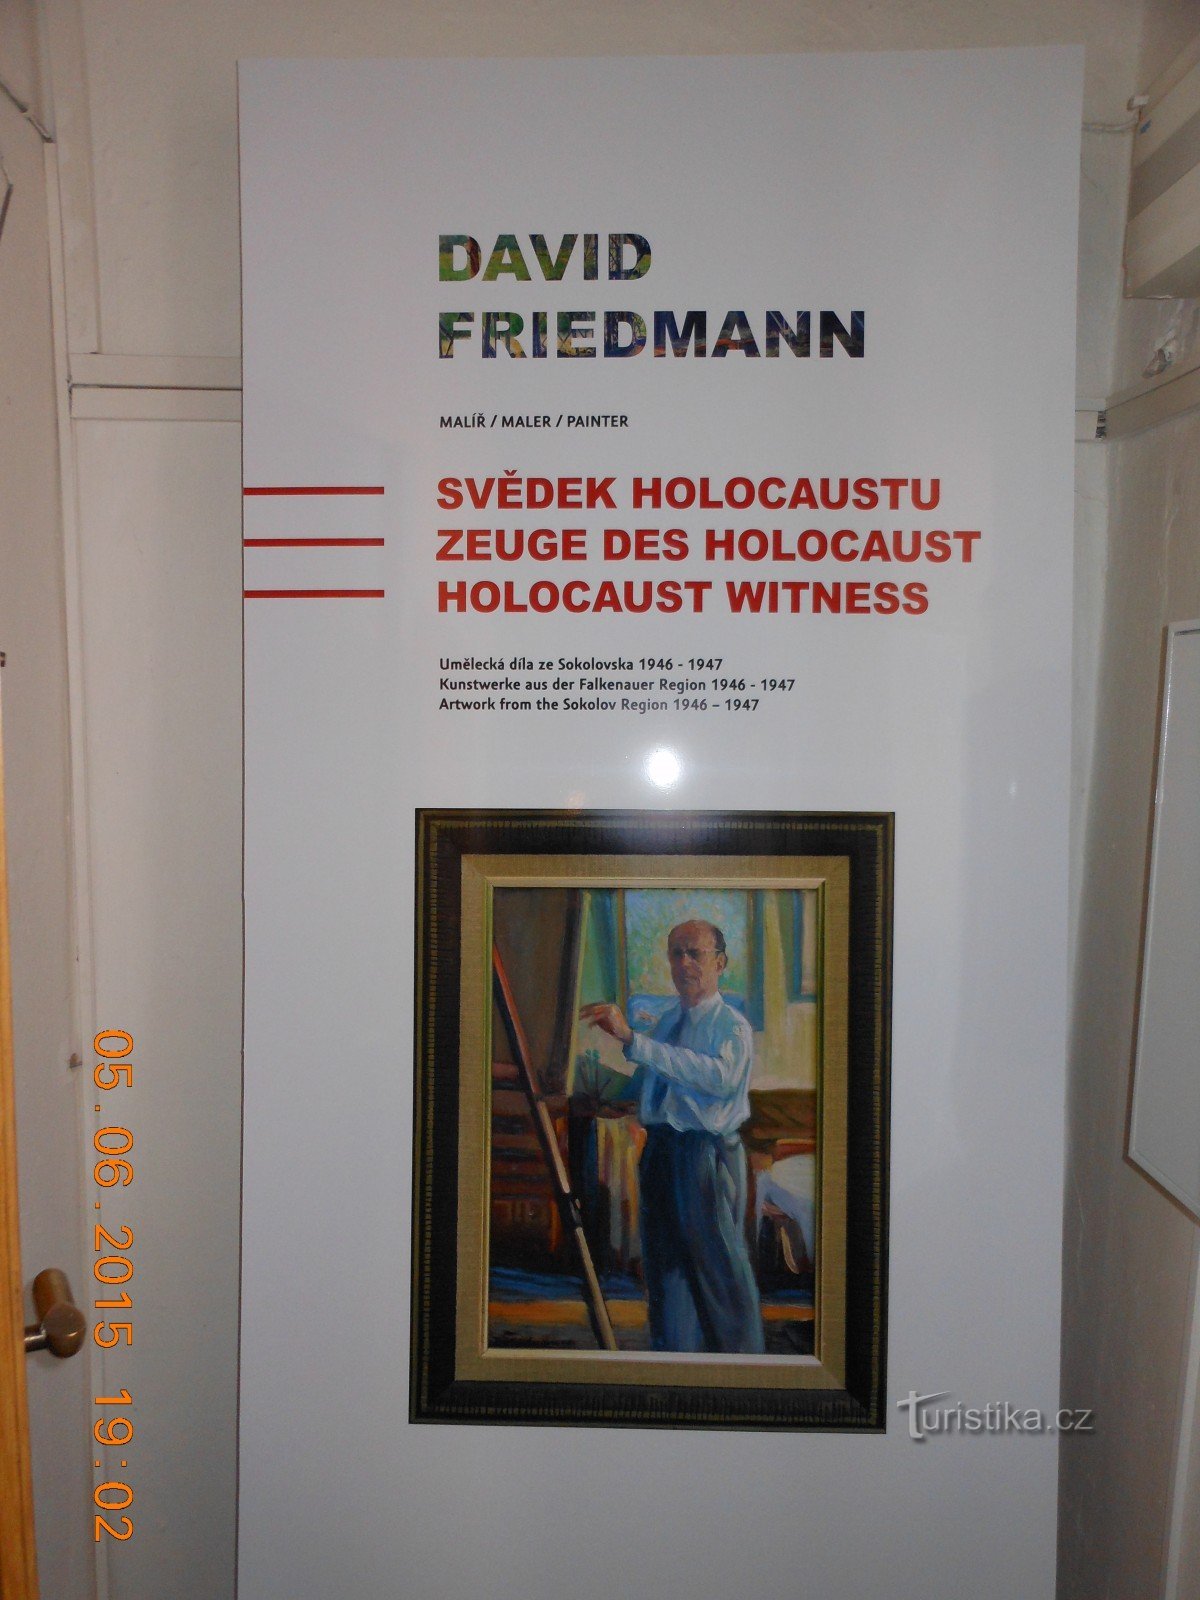 Exposition DAVID FRIEDMANN - Musée Sokolov